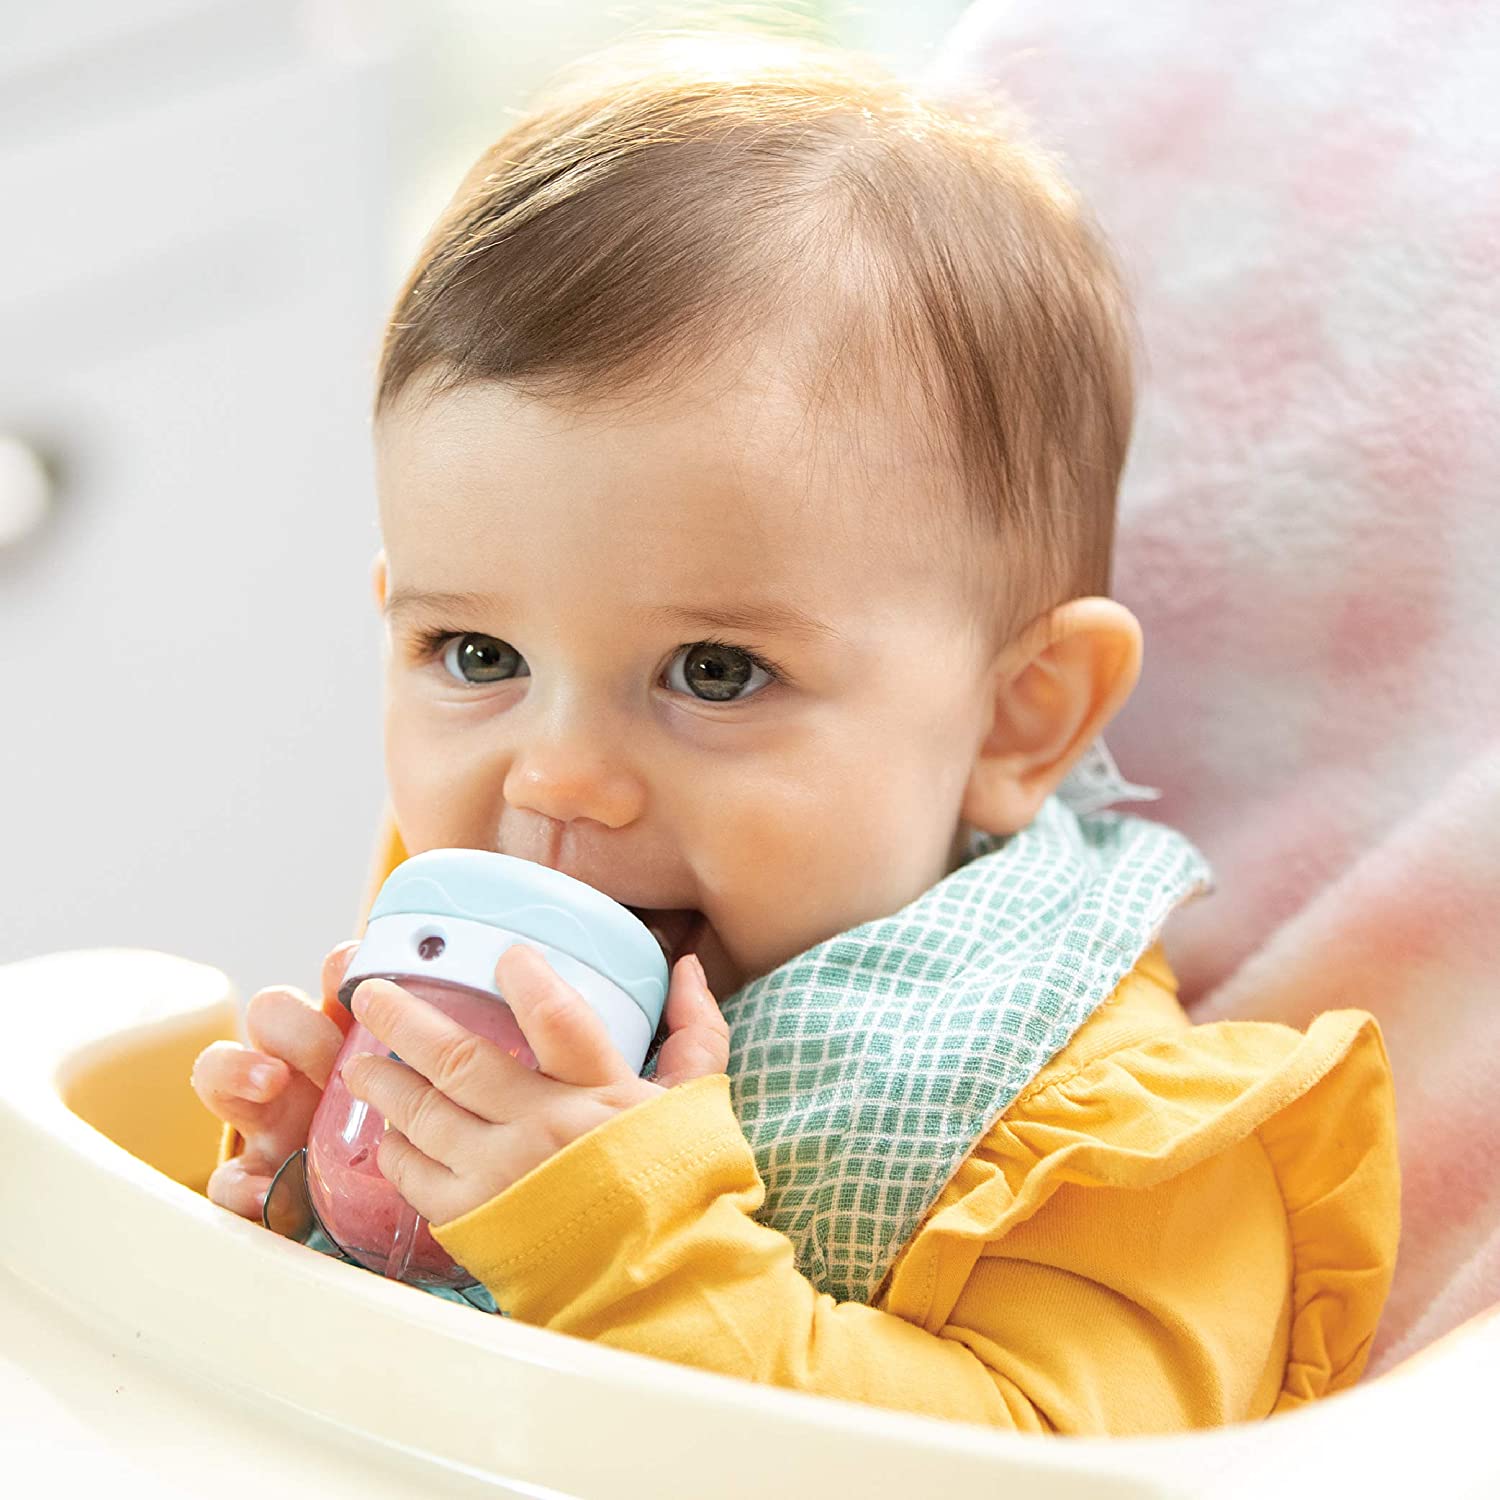 Nutribullet Baby Food Blender NBY10100 – Blue / White 